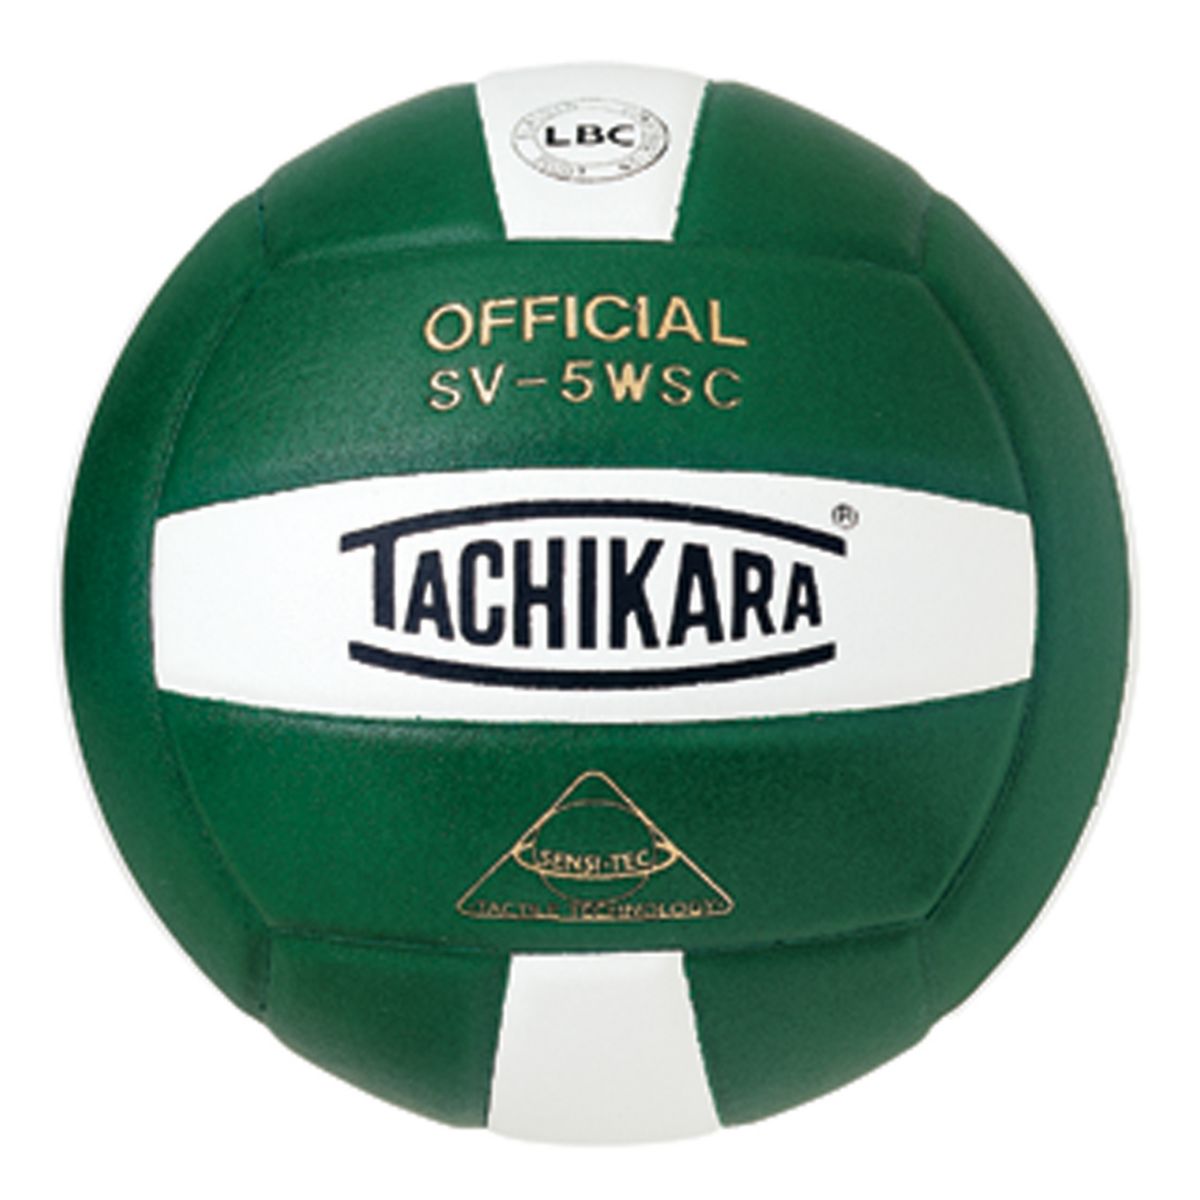 Tachikara Official SV5WSC Волейбольный мяч из композитной кожи из микрофибры Tachikara